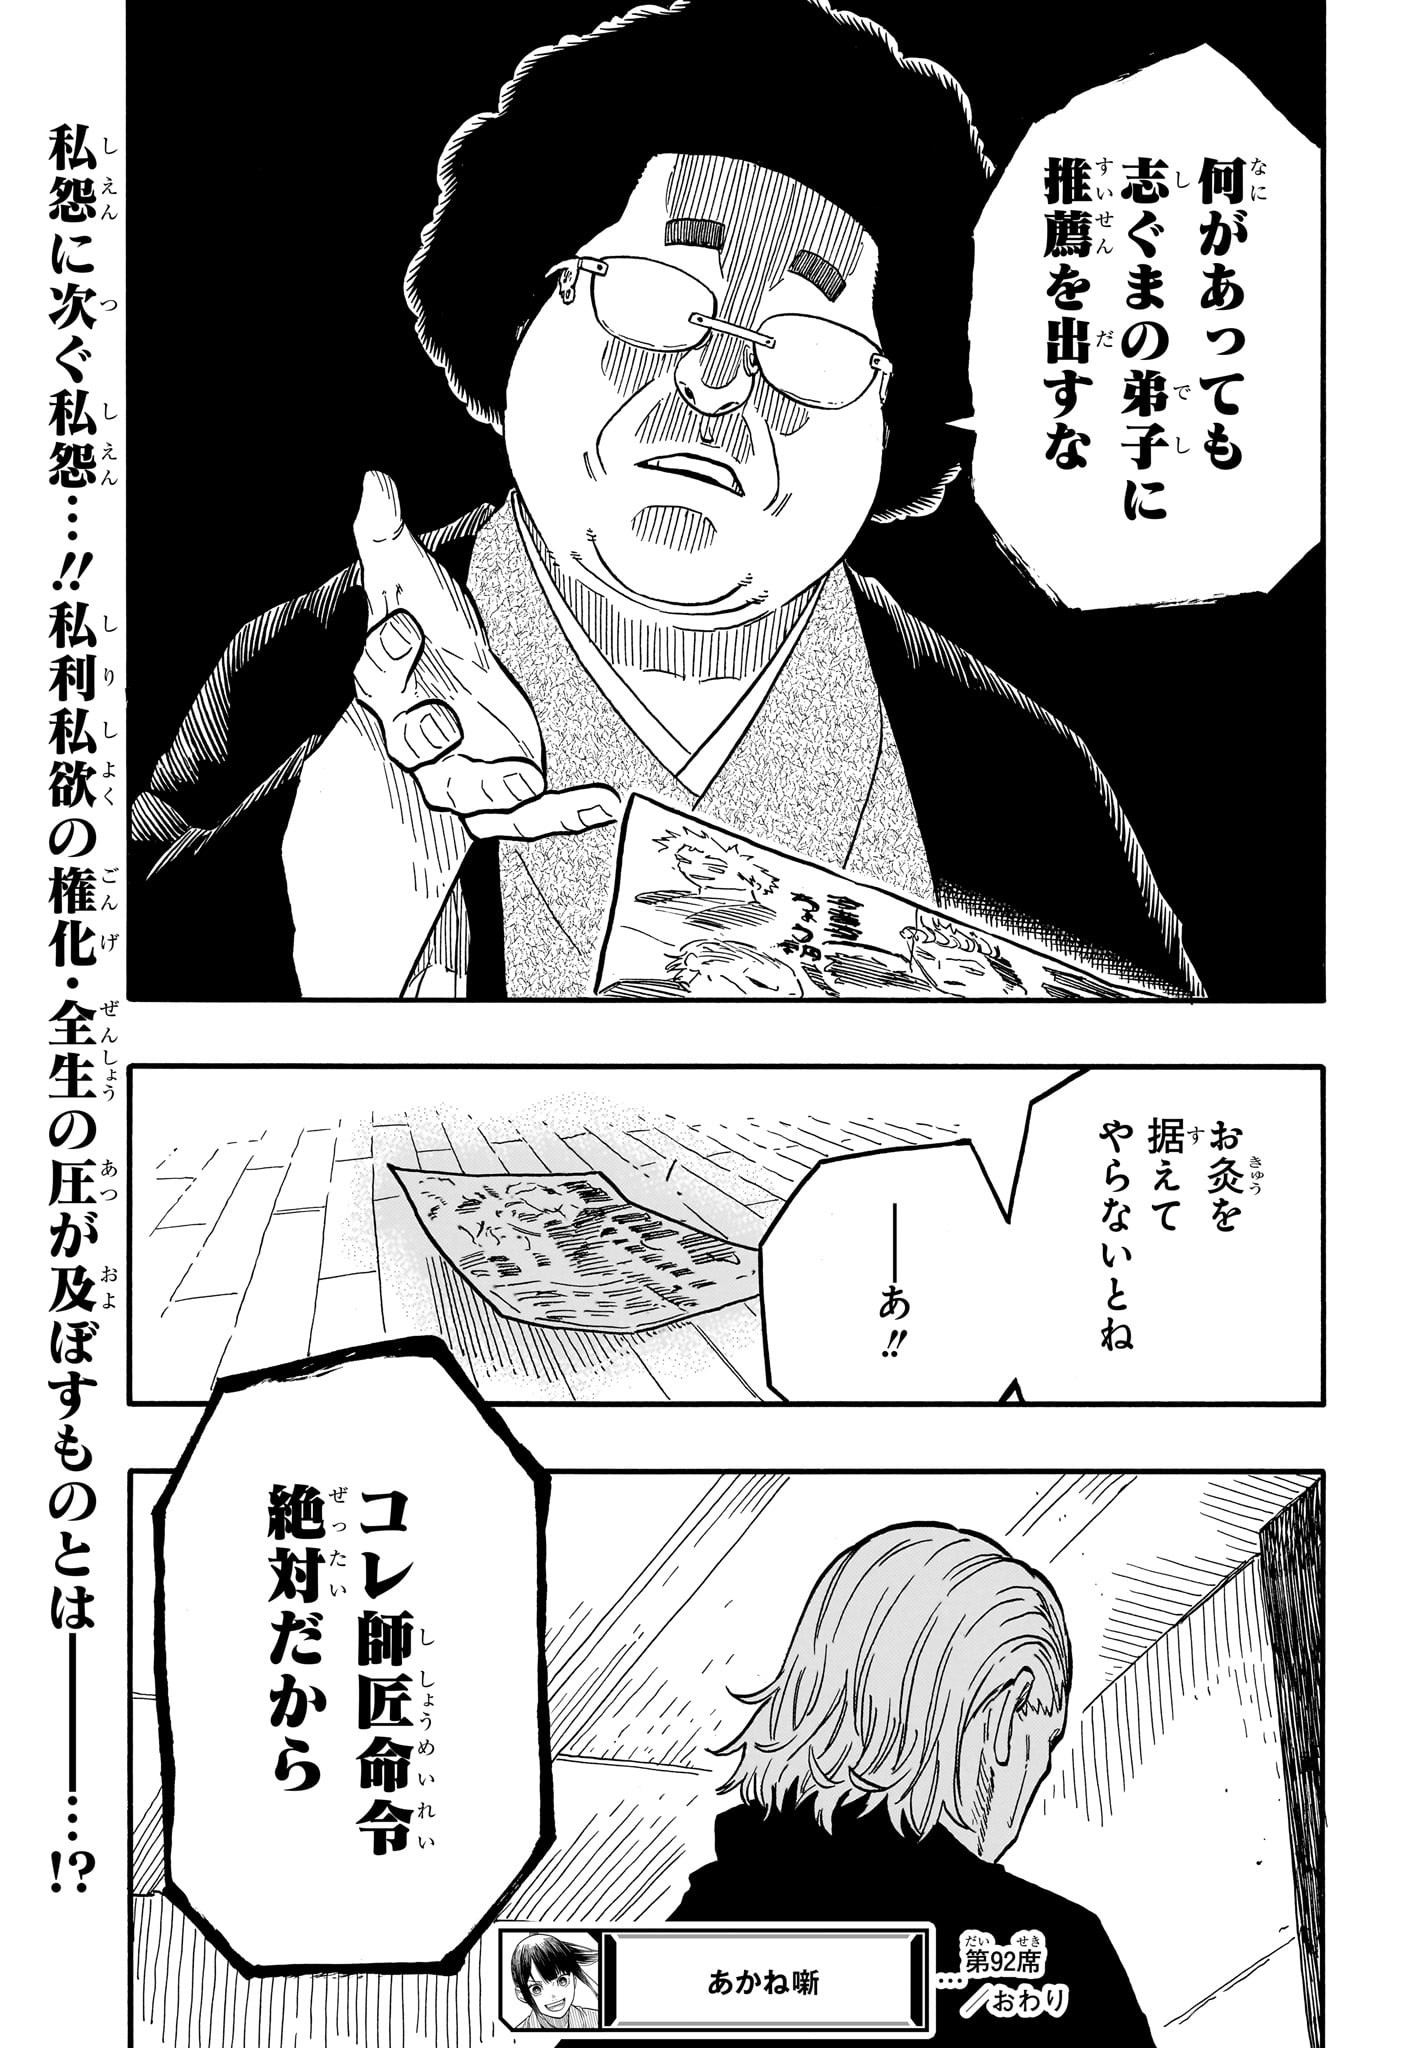 Akane-Banashi - Chapter 92 - Page 19